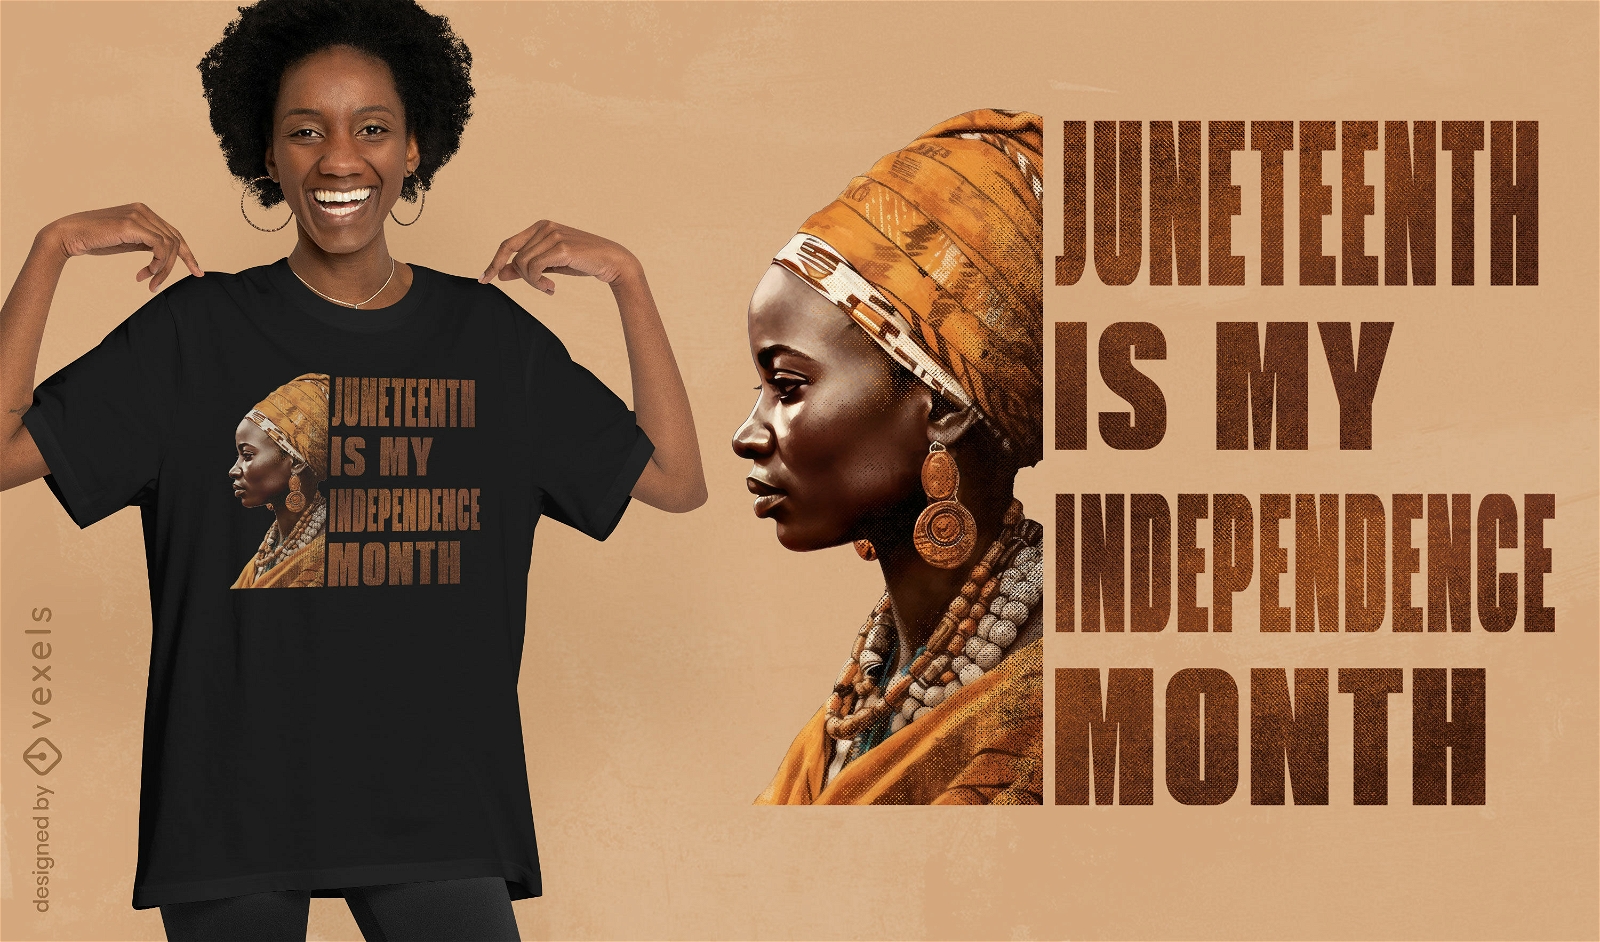 Juneteenth Independence celebration t-shirt design